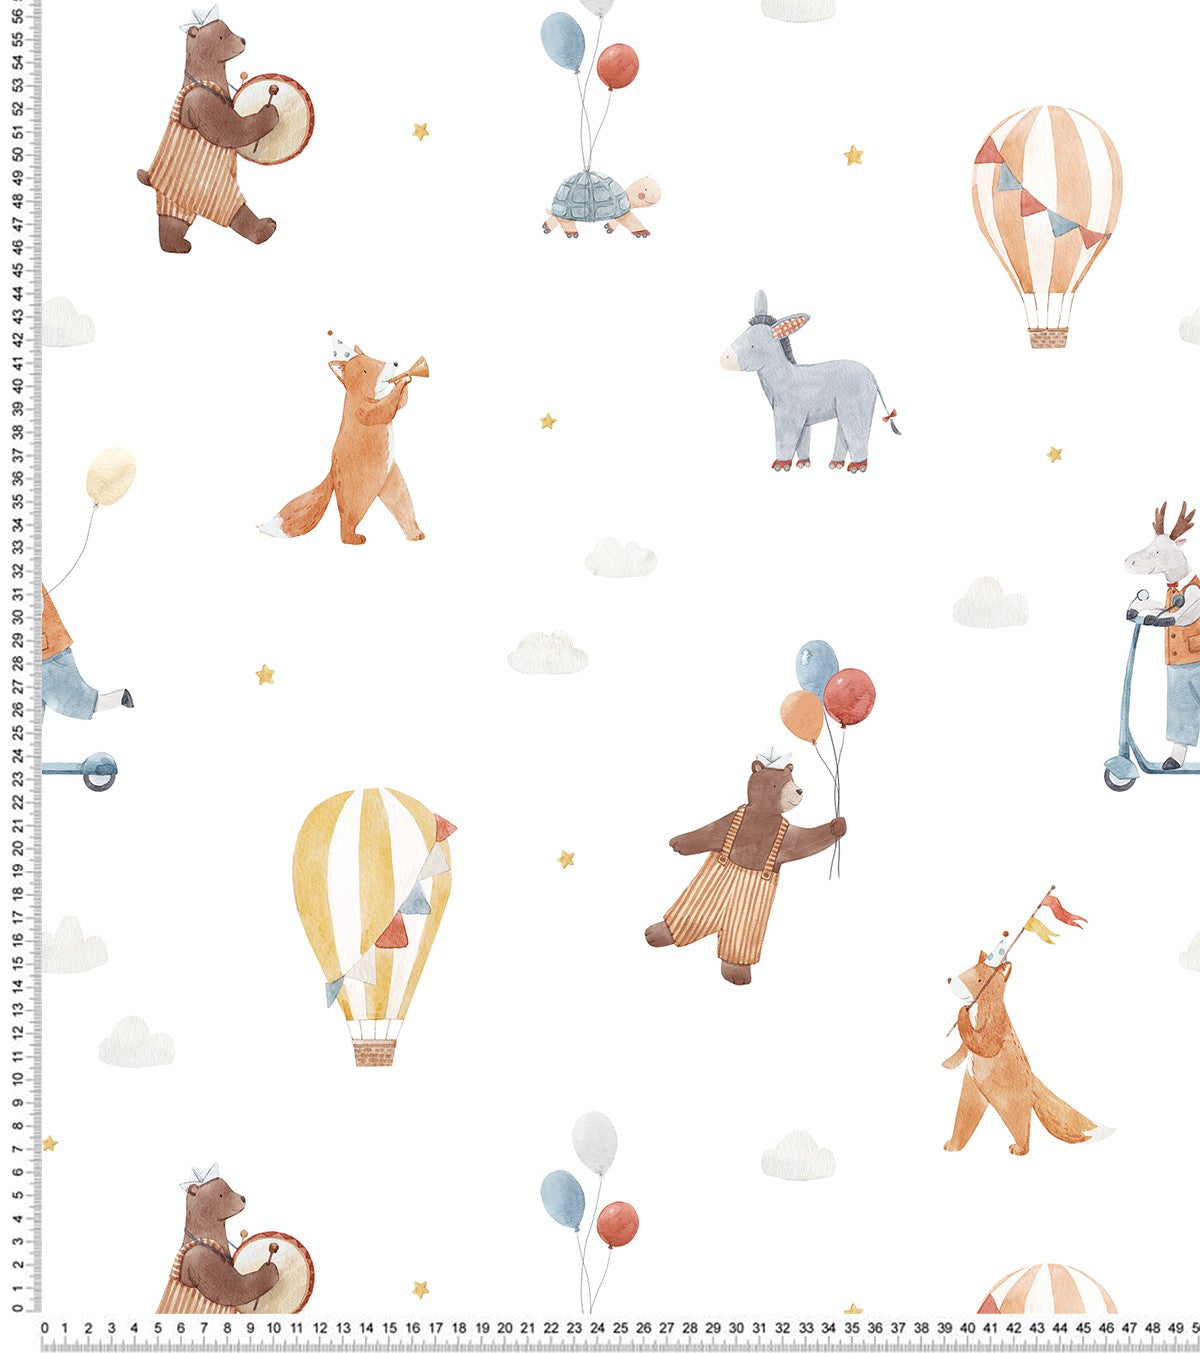 GENTLE FRIENDS - Children's wallpaper - Animals and hot-air balloons motif